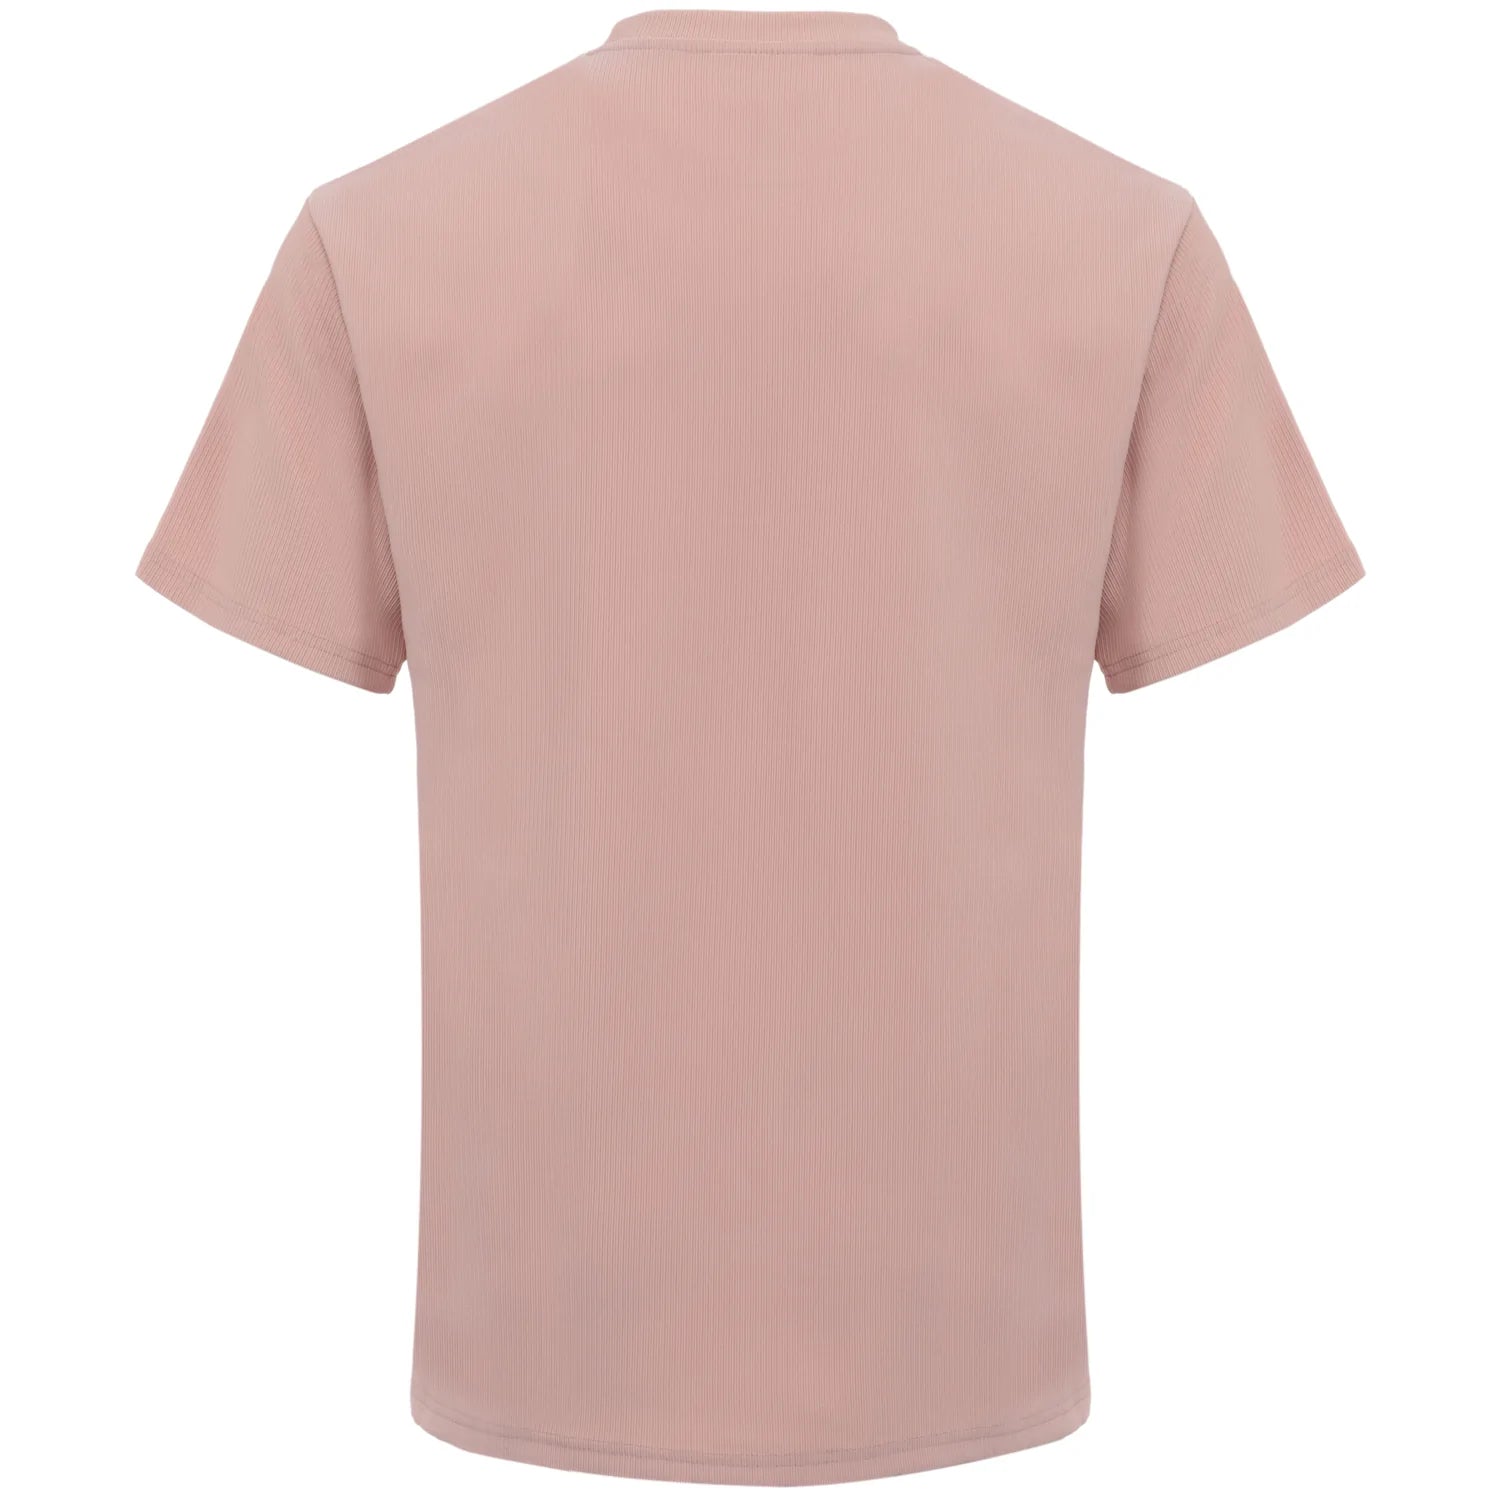 Sixth June - T-shirt plissé manches courtes Beige